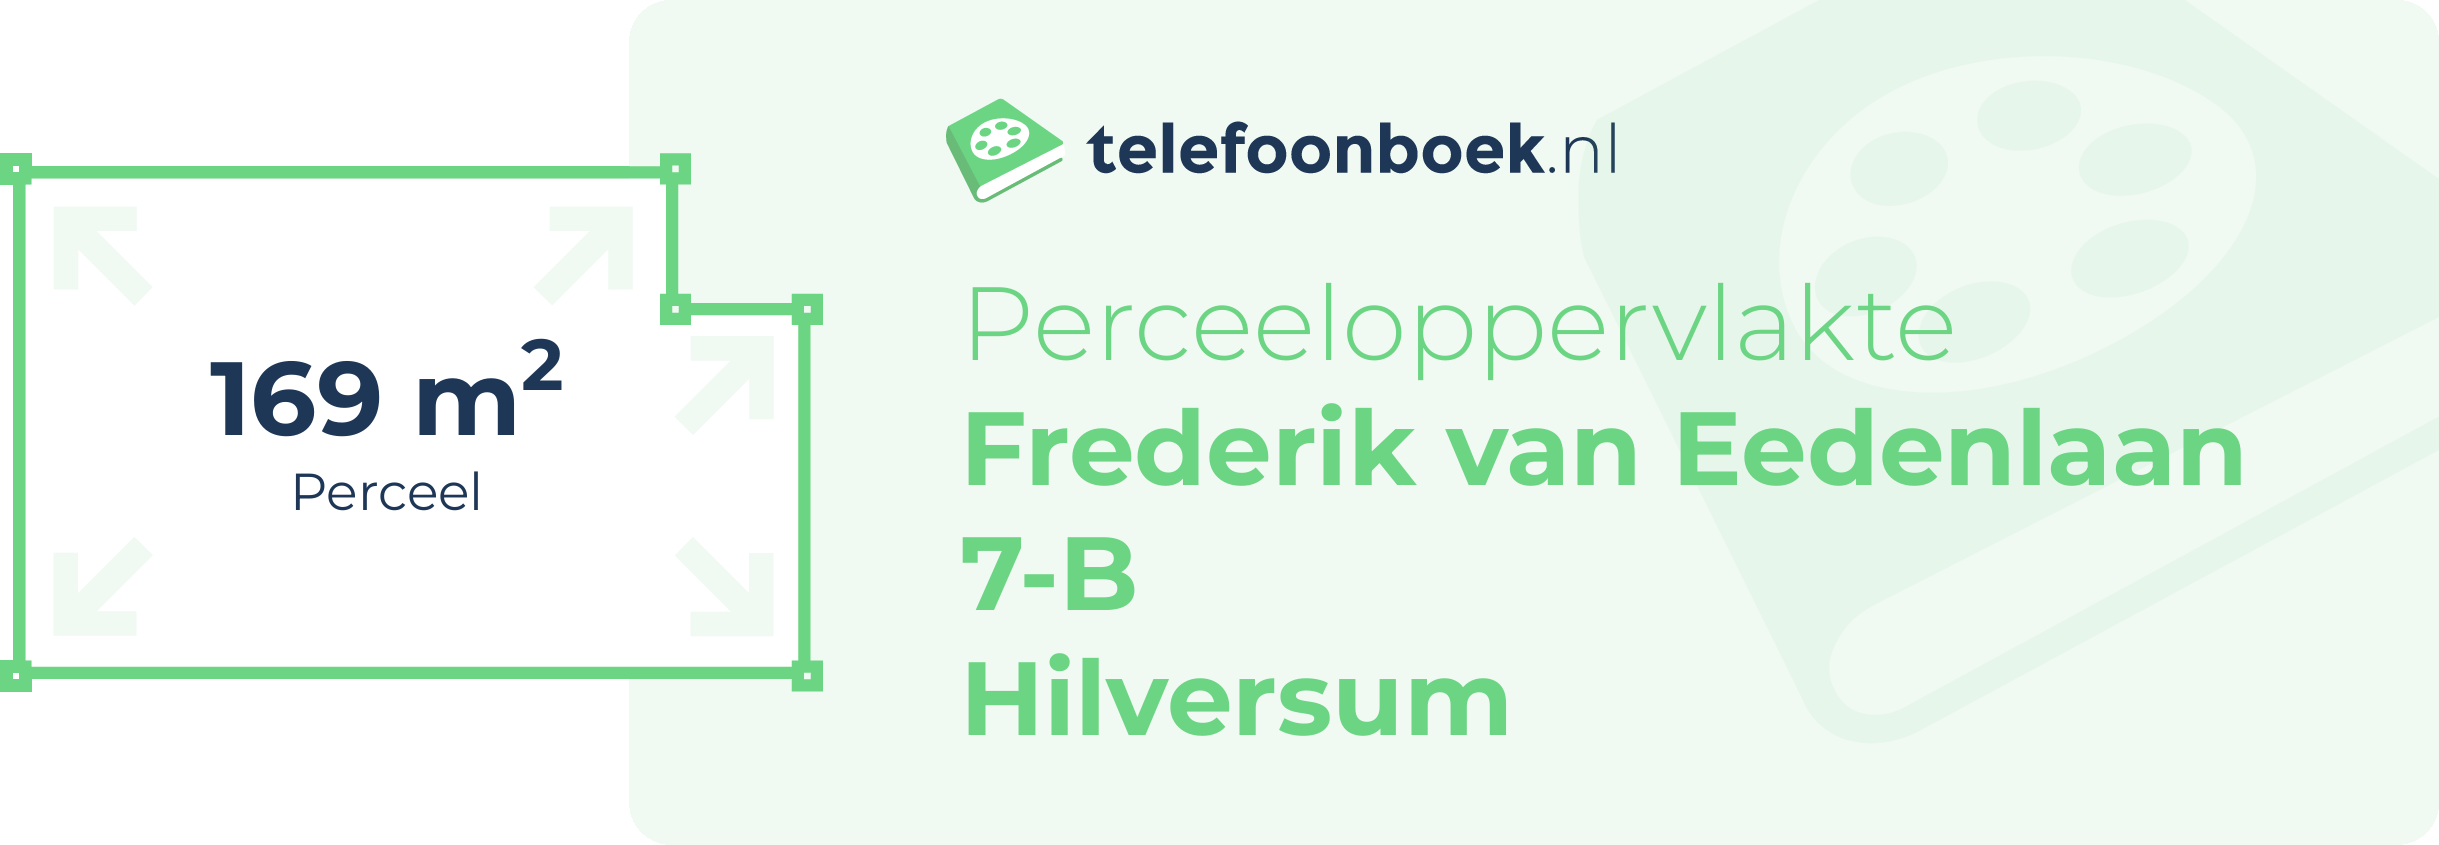 Perceeloppervlakte Frederik Van Eedenlaan 7-B Hilversum